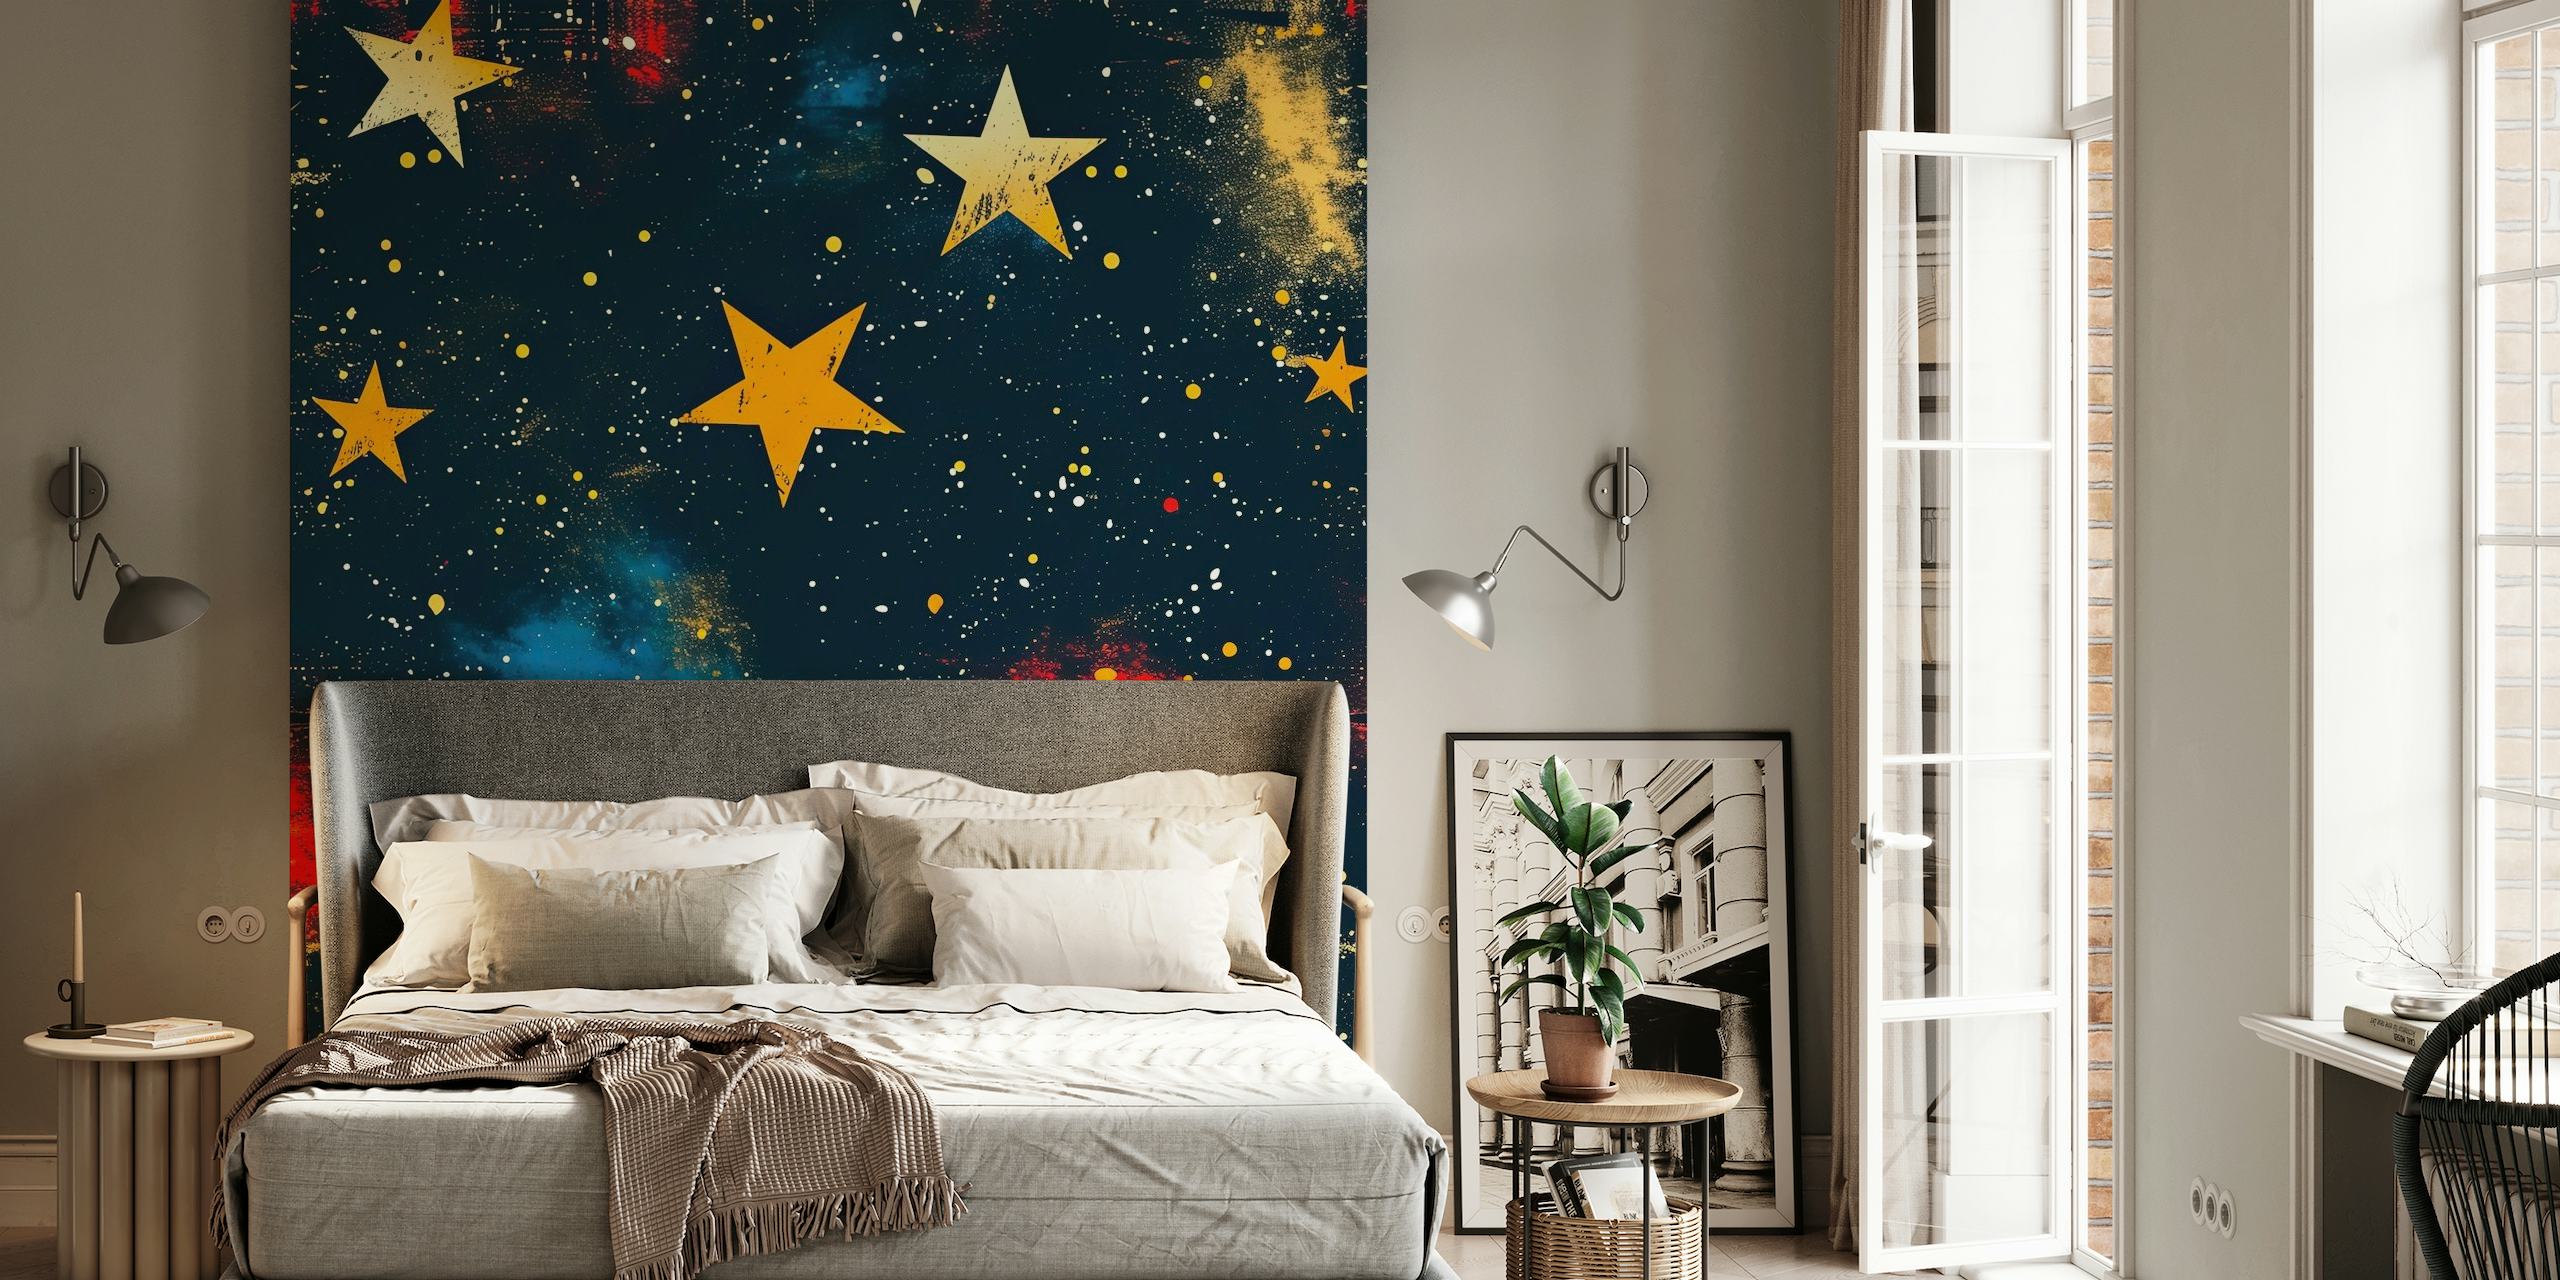 Zidna slika Zvijezde iznad sa živopisnim zvijezdama i maglicama na tamnoj pozadini